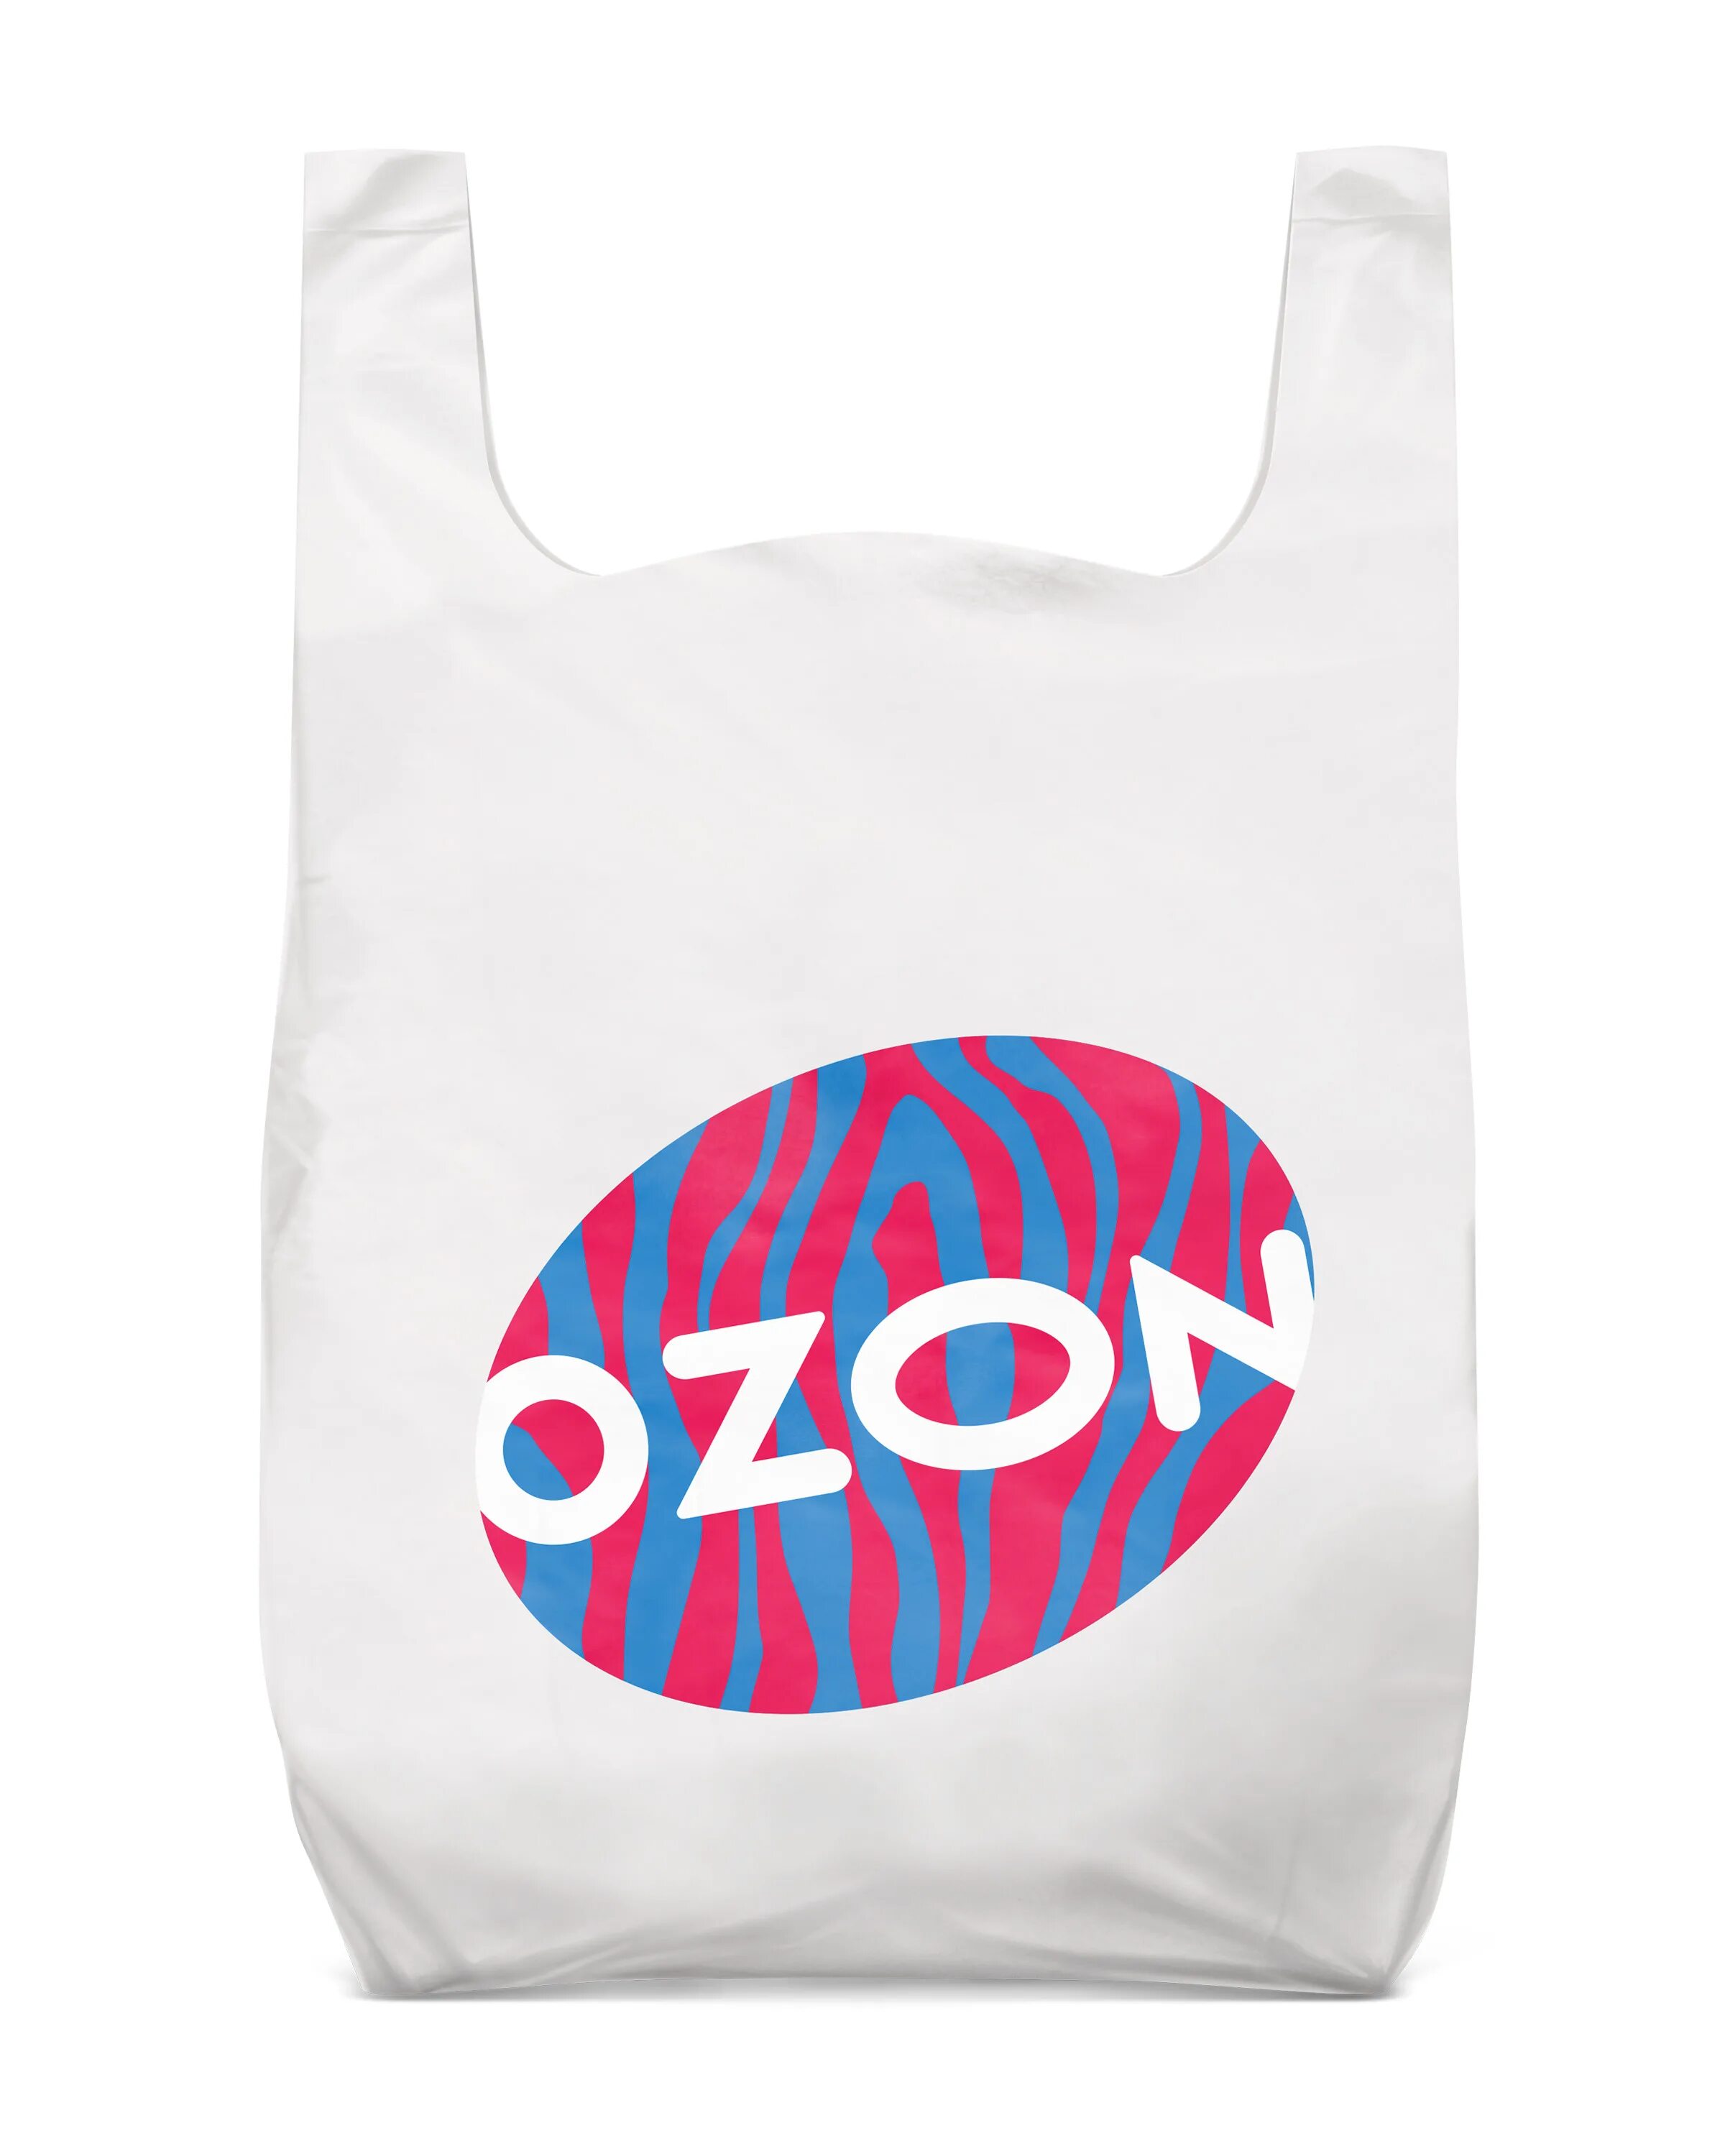 Пакеты OZON Зебра 500 шт. Пакет OZON майка. Большие пакеты Озон. Пакет Озон фирменный.